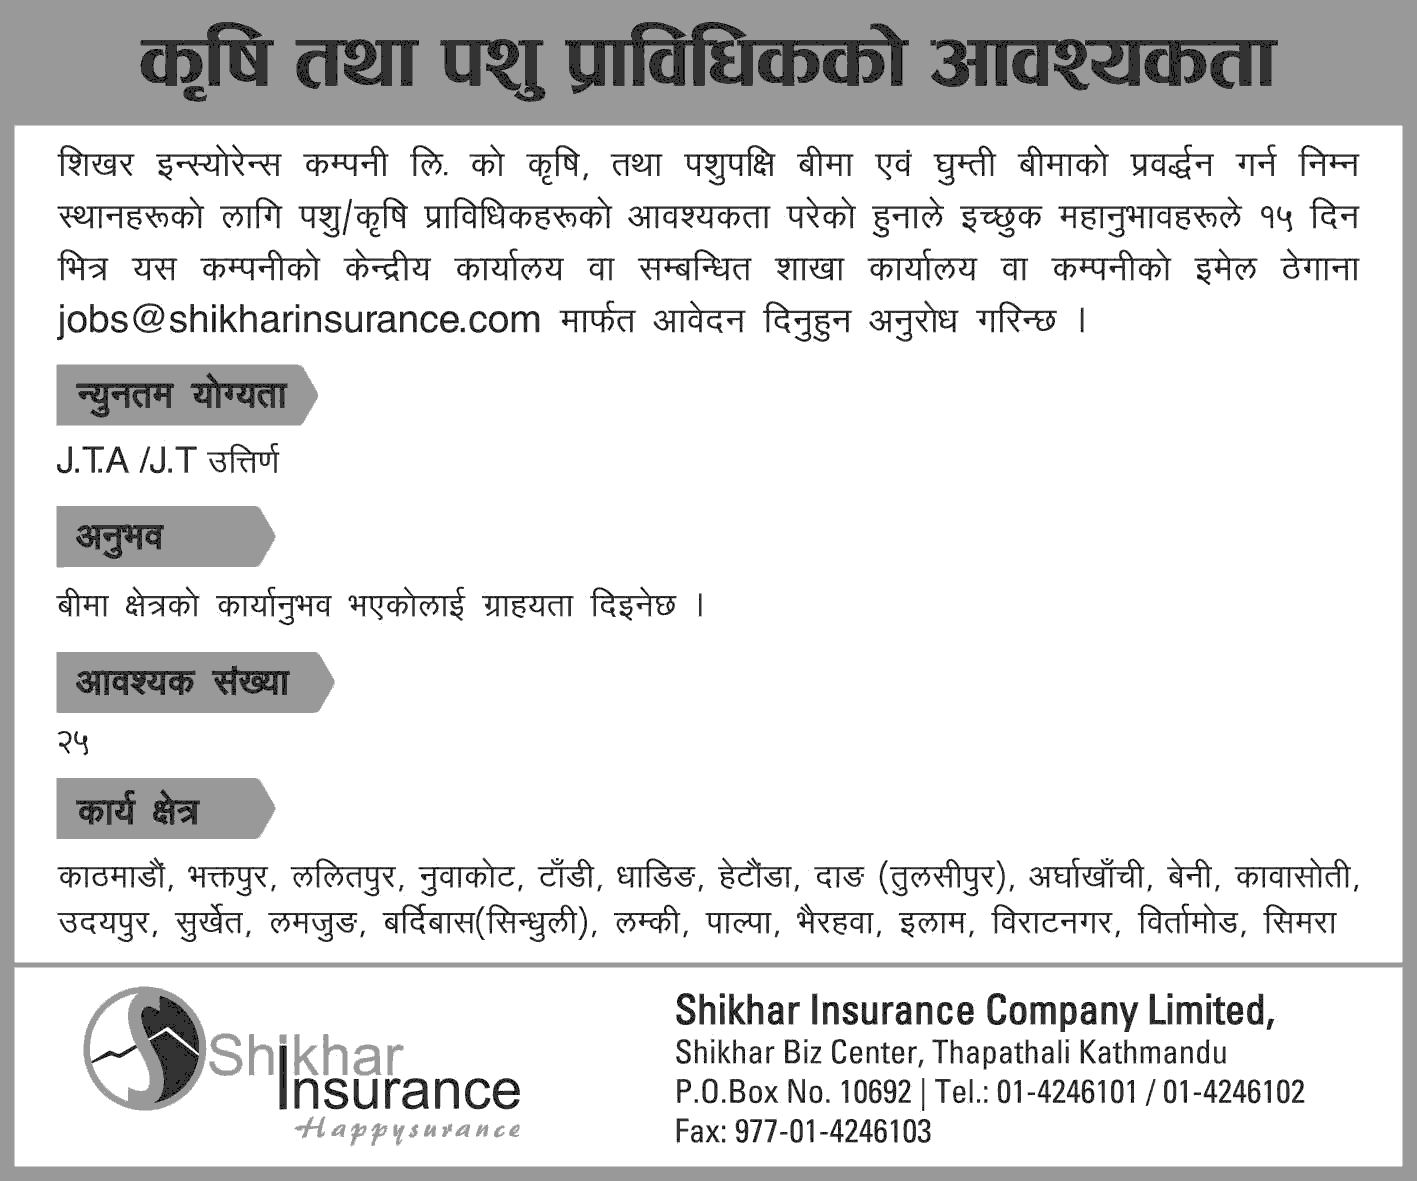 Shikhar Insurance Company Limited Vacancy for JTAJT